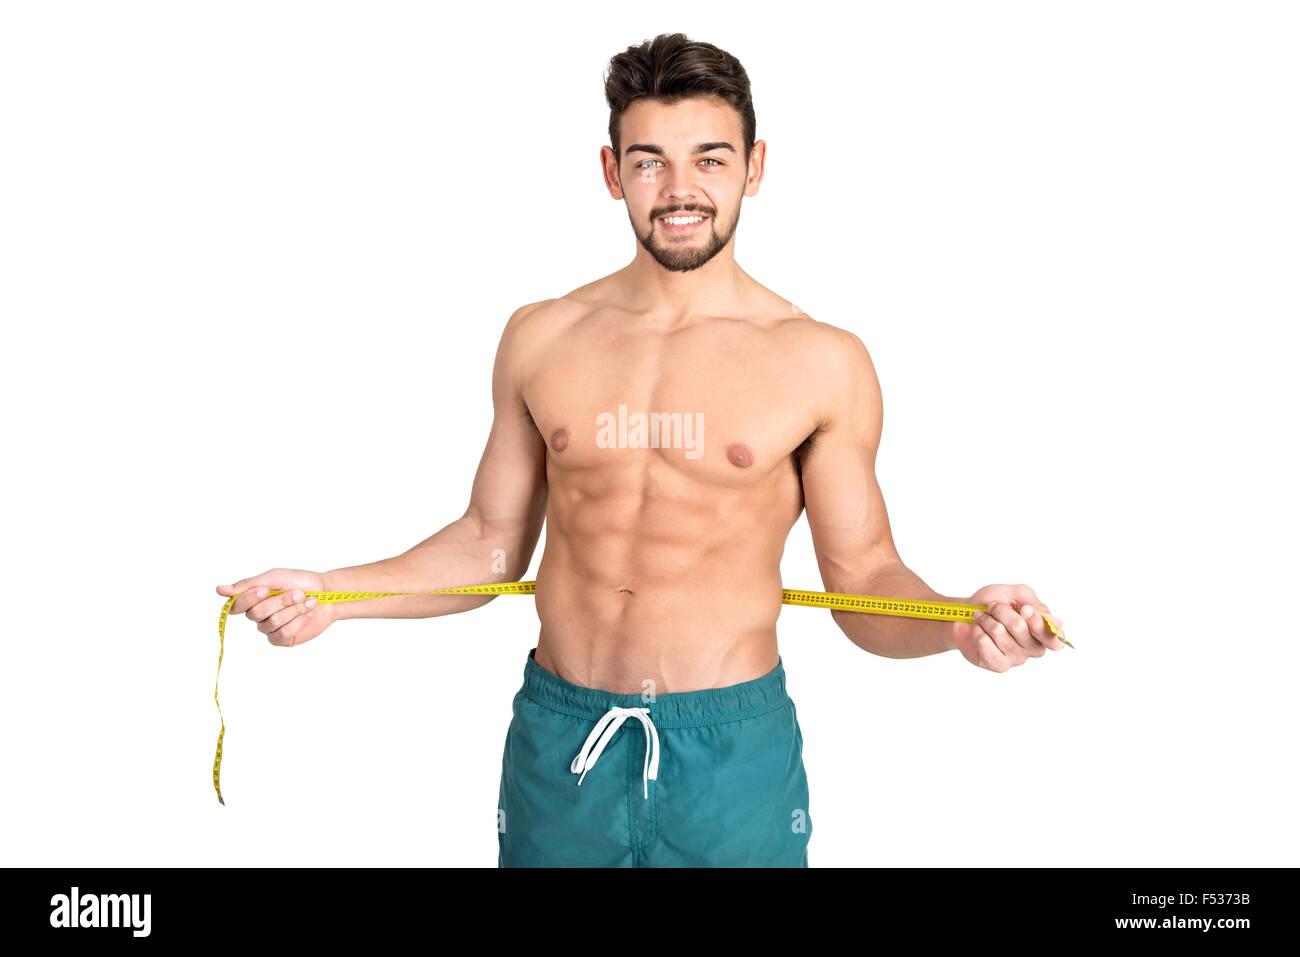 Muskulös und Fit junger Mann mit großen Bauchmuskeln und Maßband isoliert in weiß Stockfoto